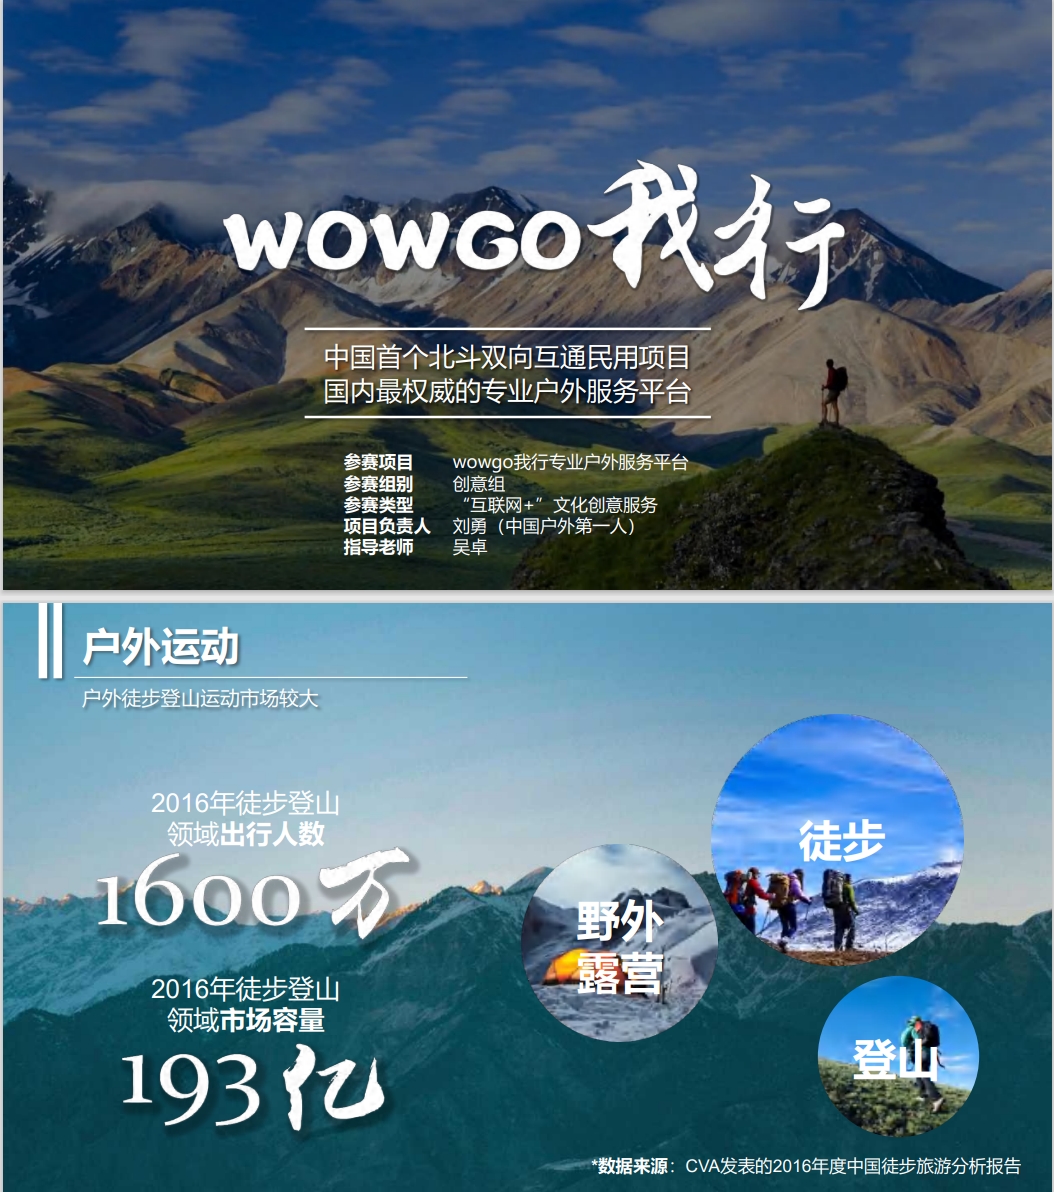 【国赛】wowgo我行专业户外服务平台